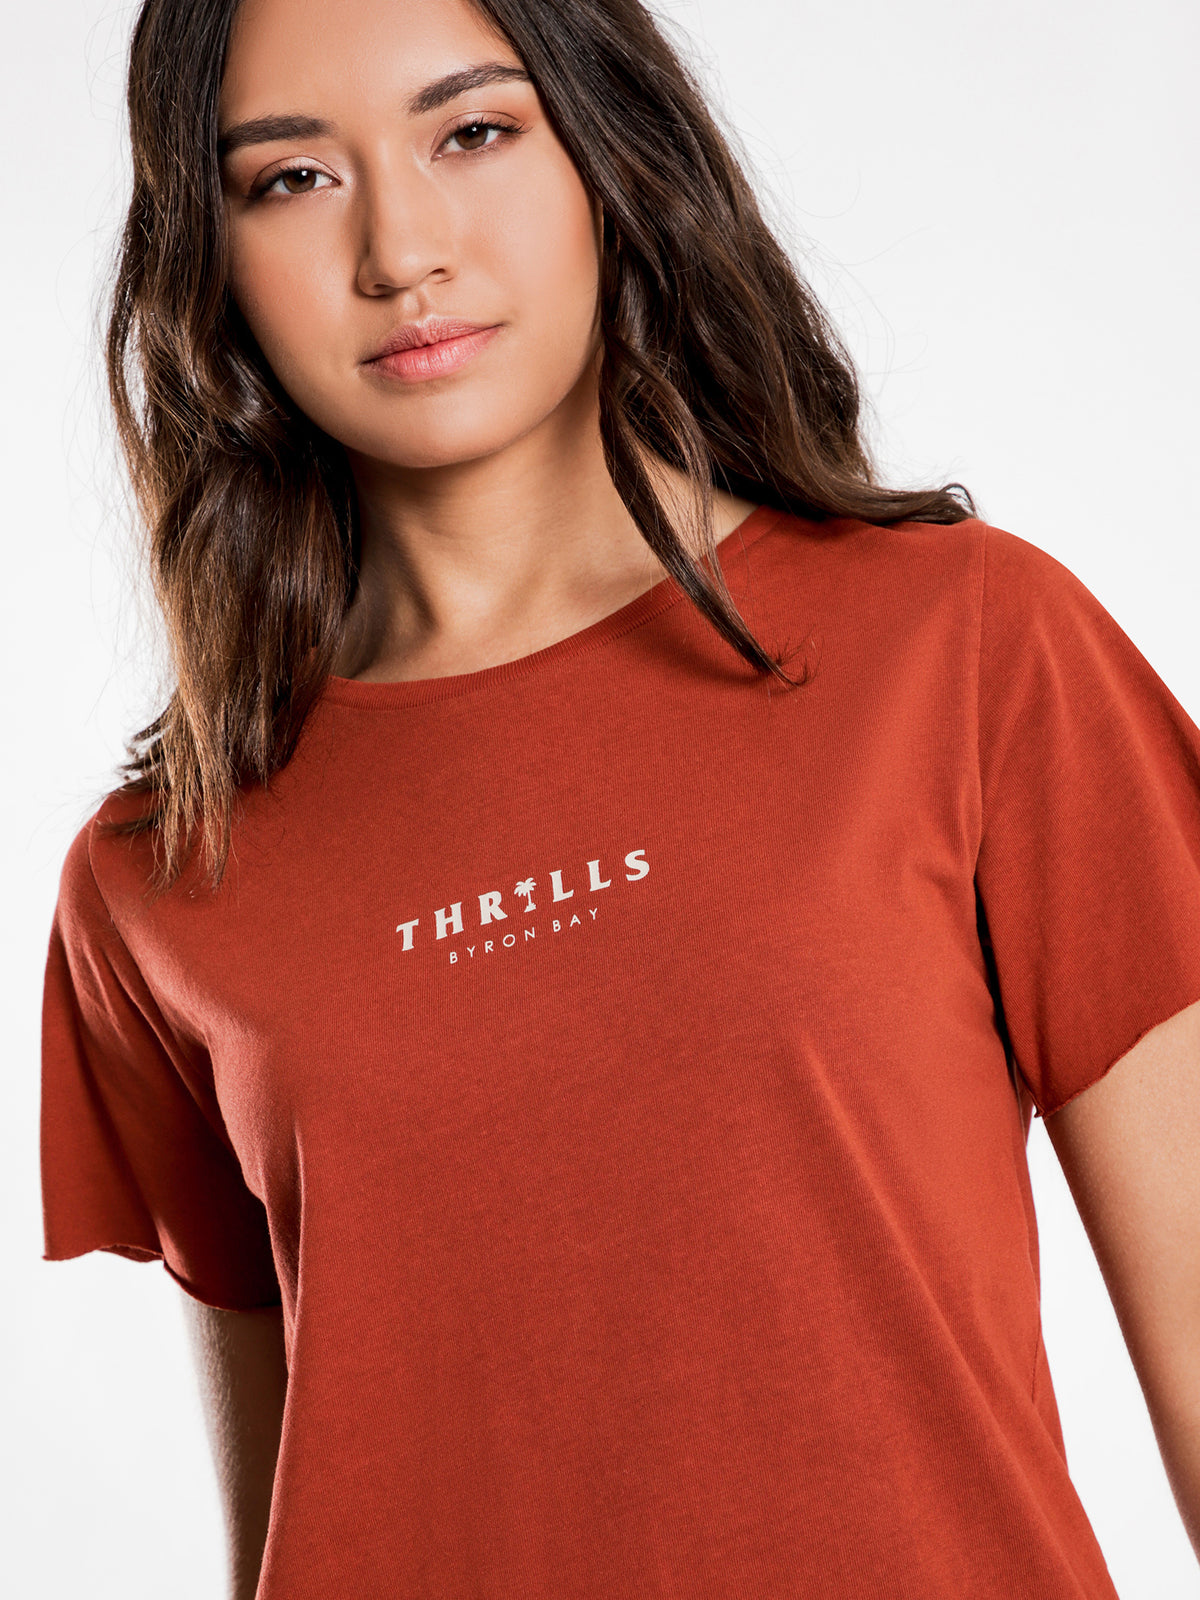 Palmed Thrills T-Shirt in Rocker Red